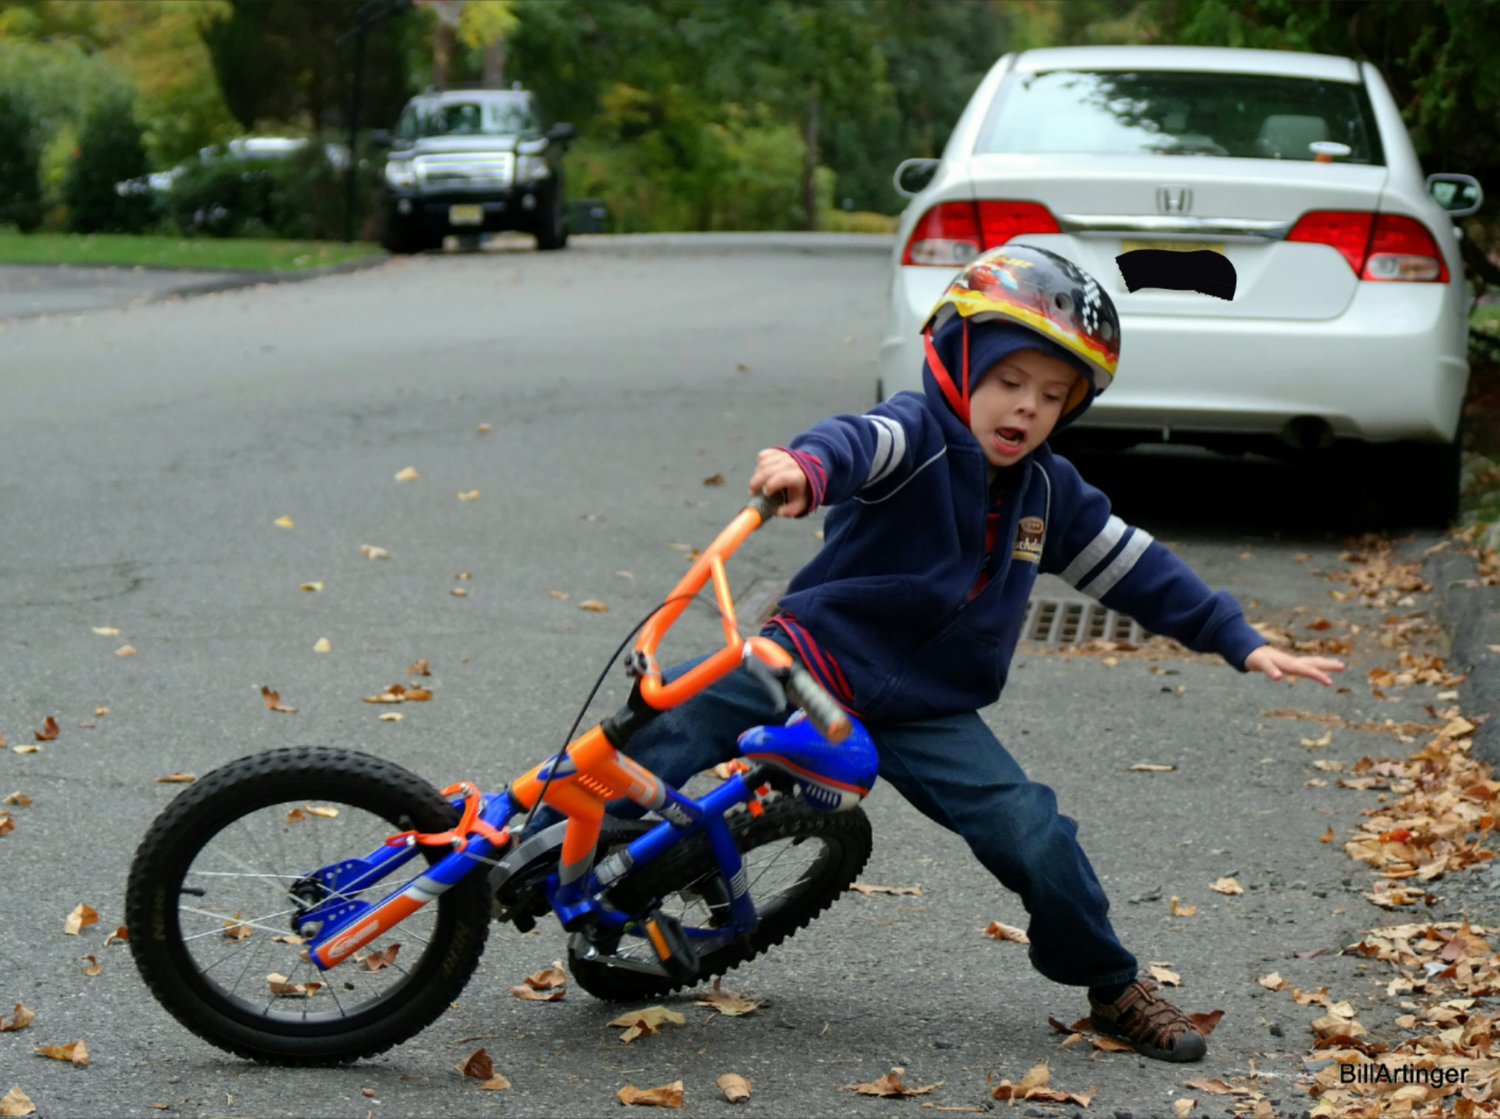 Fall failed. Мальчик упал с велосипеда. Дети с велосипедом. Падение ребенка с велосипеда. Ребенок упал с велосипеда.